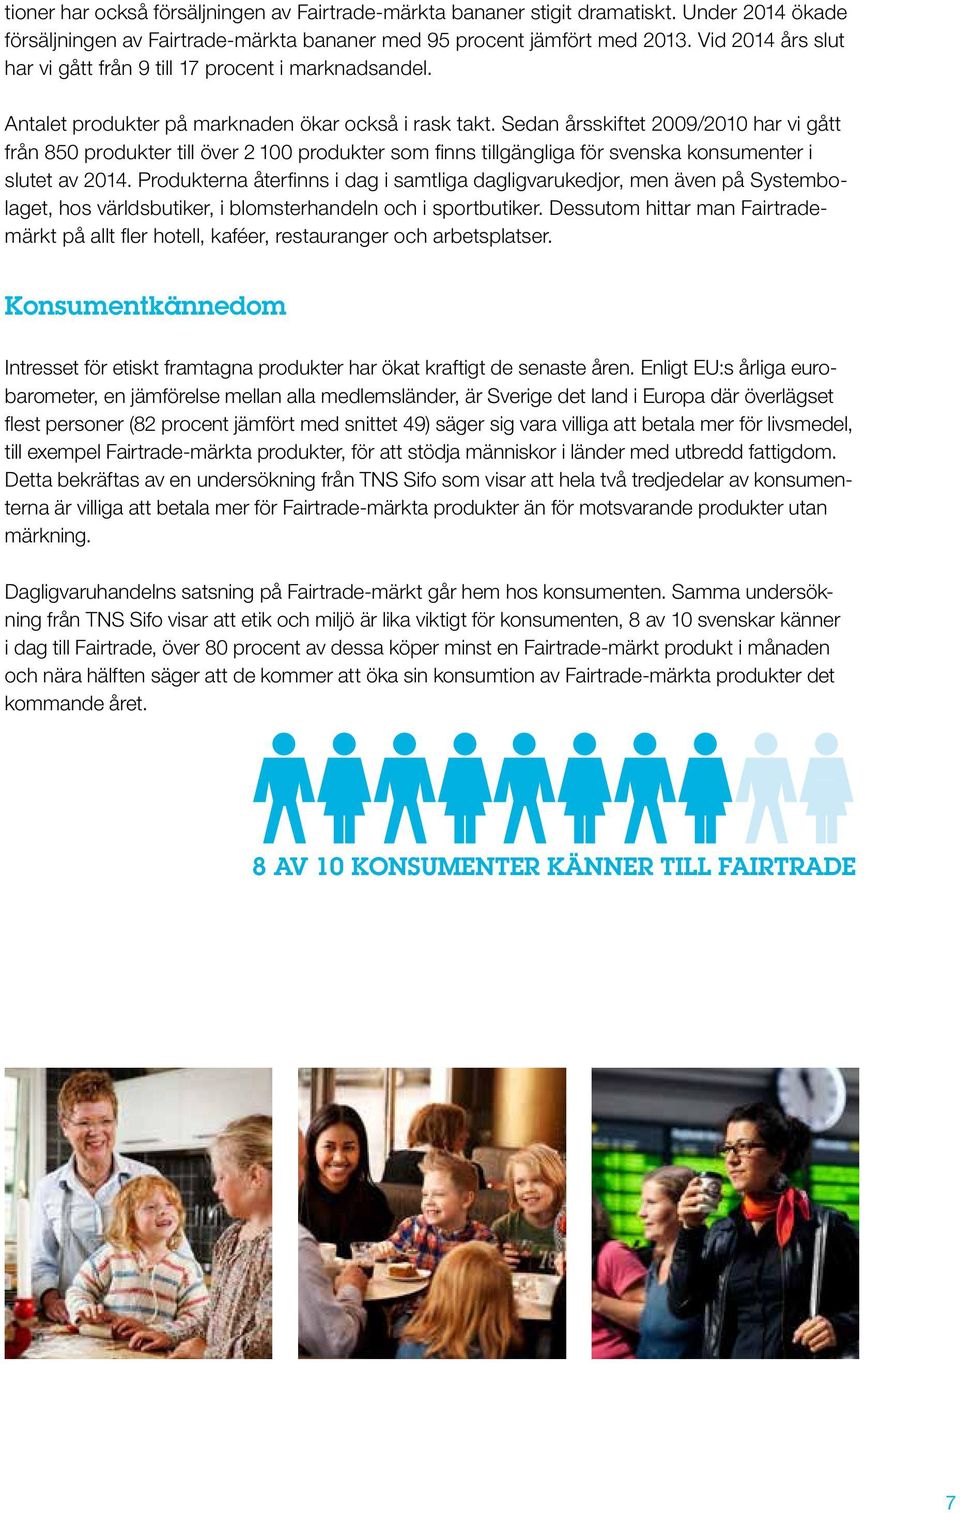 SÄLJS Sedan årsskiftet ÄR 2009/2010 ÄR har vi FAIRTRADE-MÄRKTA gått från 850 produkter till över 2 100 produkter som FAIRTRADE-MÄRKTA finns tillgängliga för svenska konsumenter i slutet av 2014.